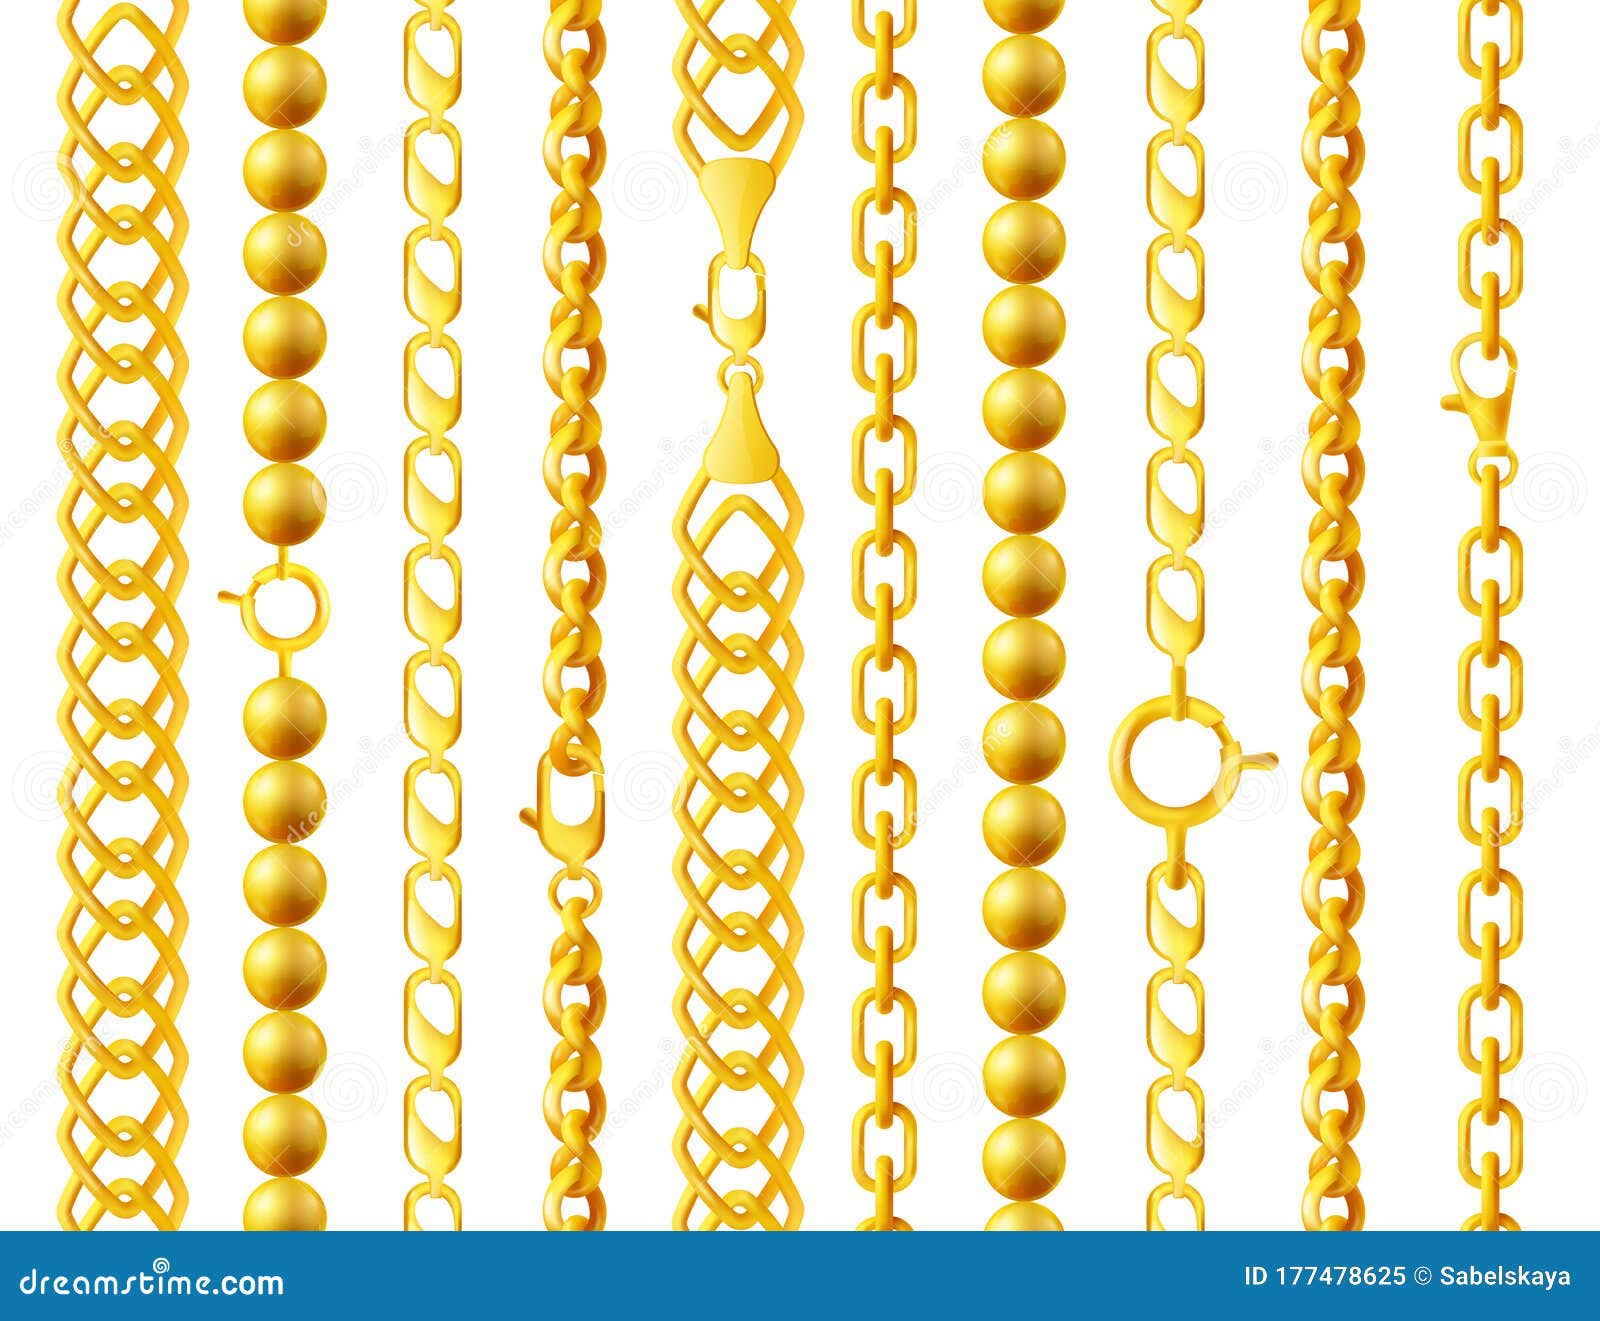 Conjunto de cadenas de oro de diferentes formas, tejidos, tamaños.  ilustración vectorial